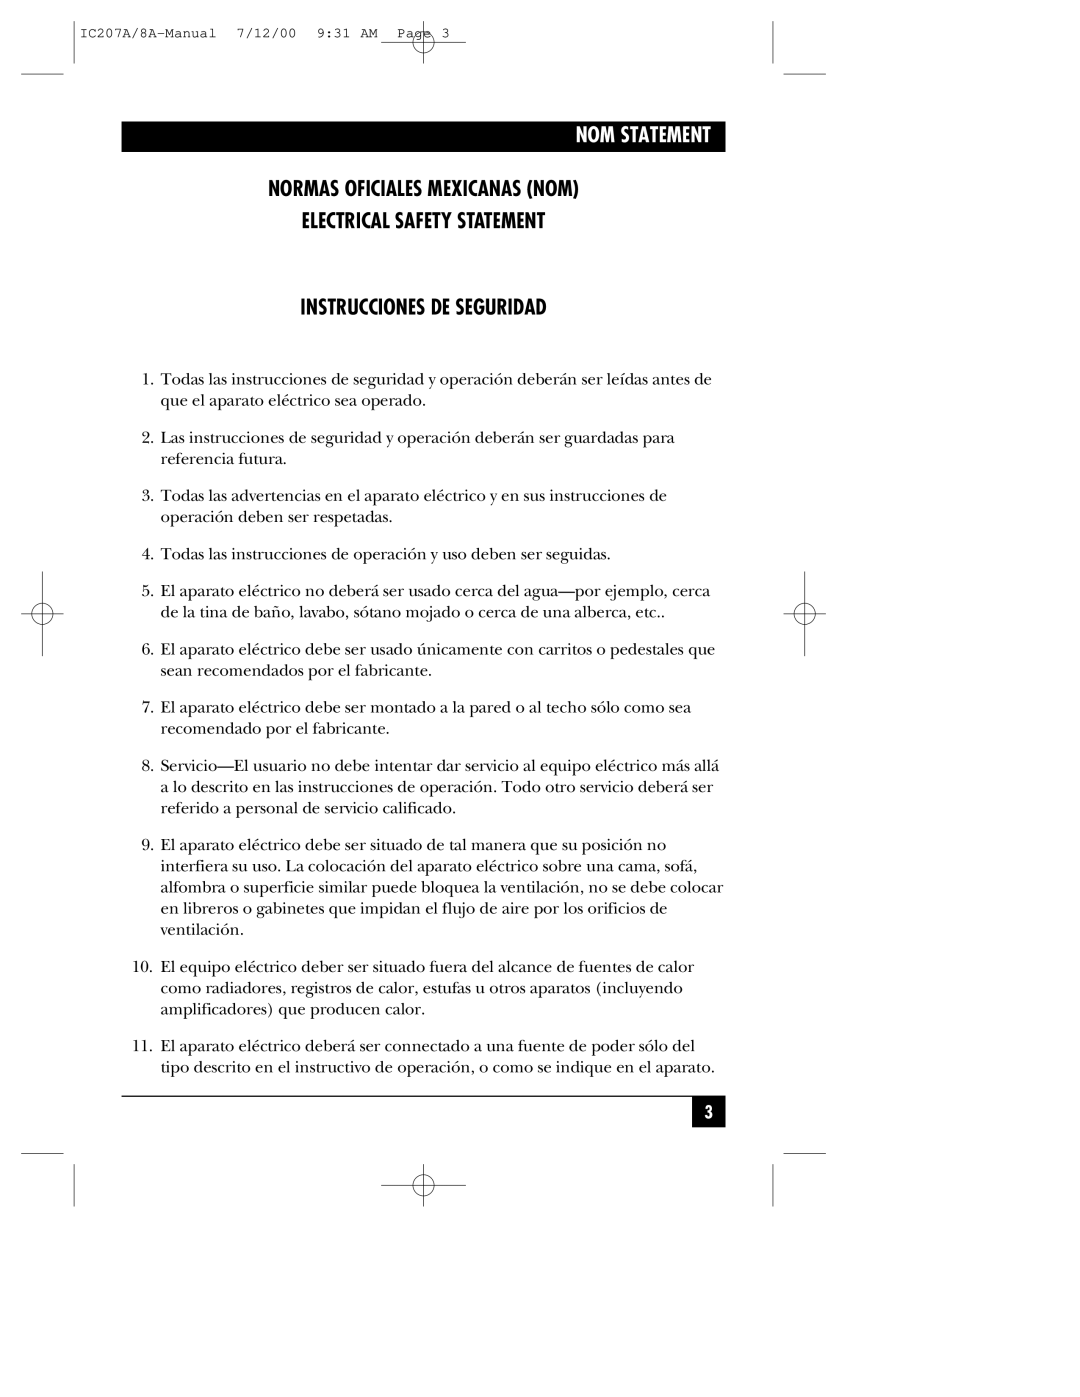 Black Box RJ-11 Nom Statement, Normas Oficiales Mexicanas Nom, Electrical Safety Statement, Instrucciones De Seguridad 